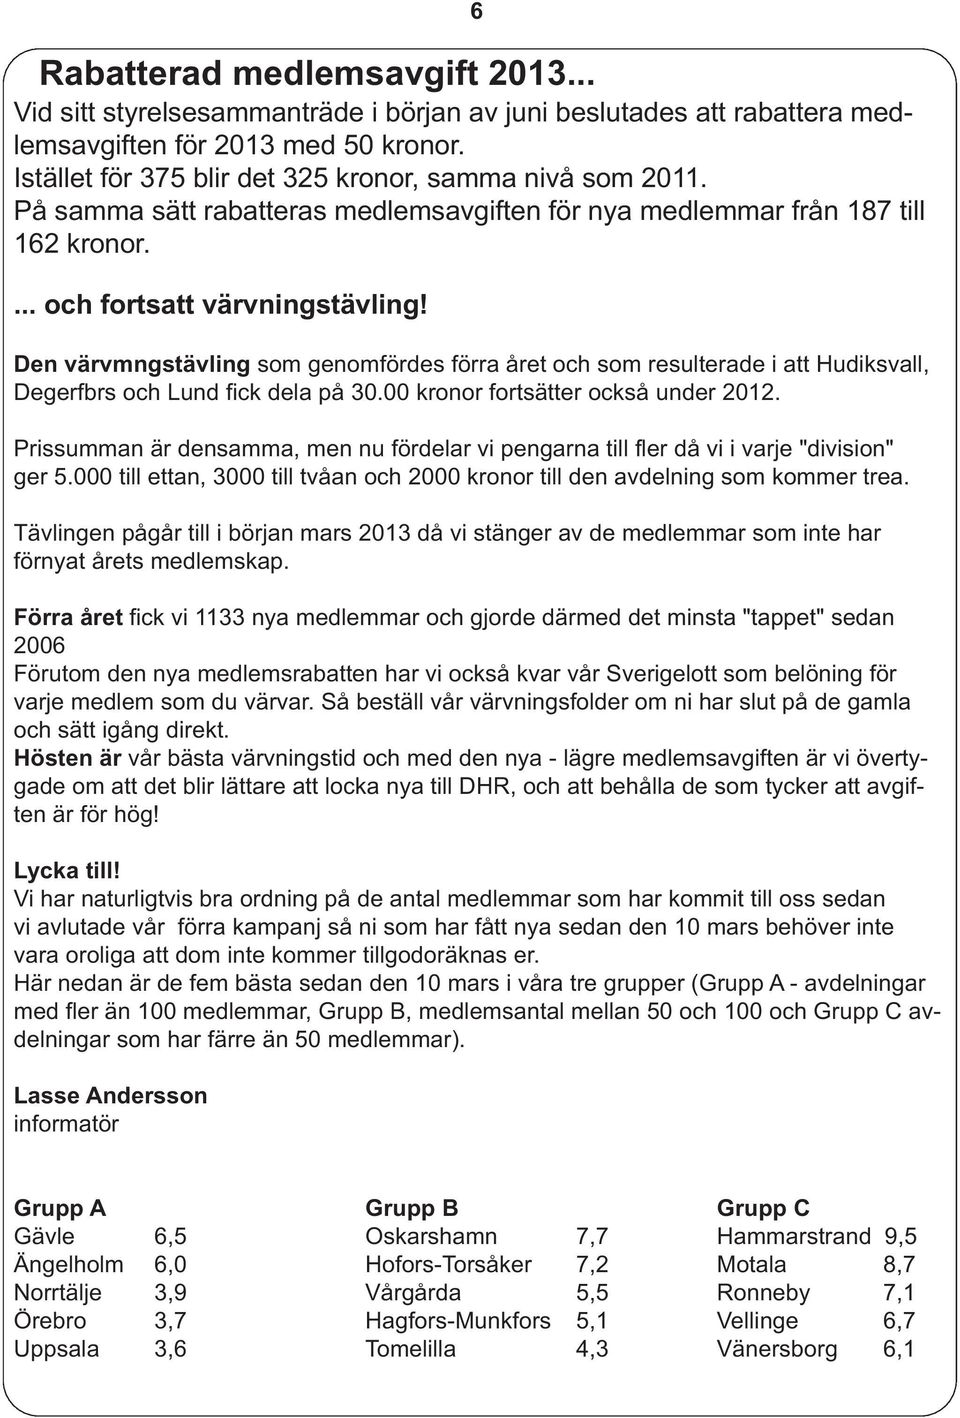 Den värvmngstävling som genomfördes förra året och som resulterade i att Hudiksvall, Degerfbrs och Lund fick dela på 30.00 kronor fortsätter också under 2012.